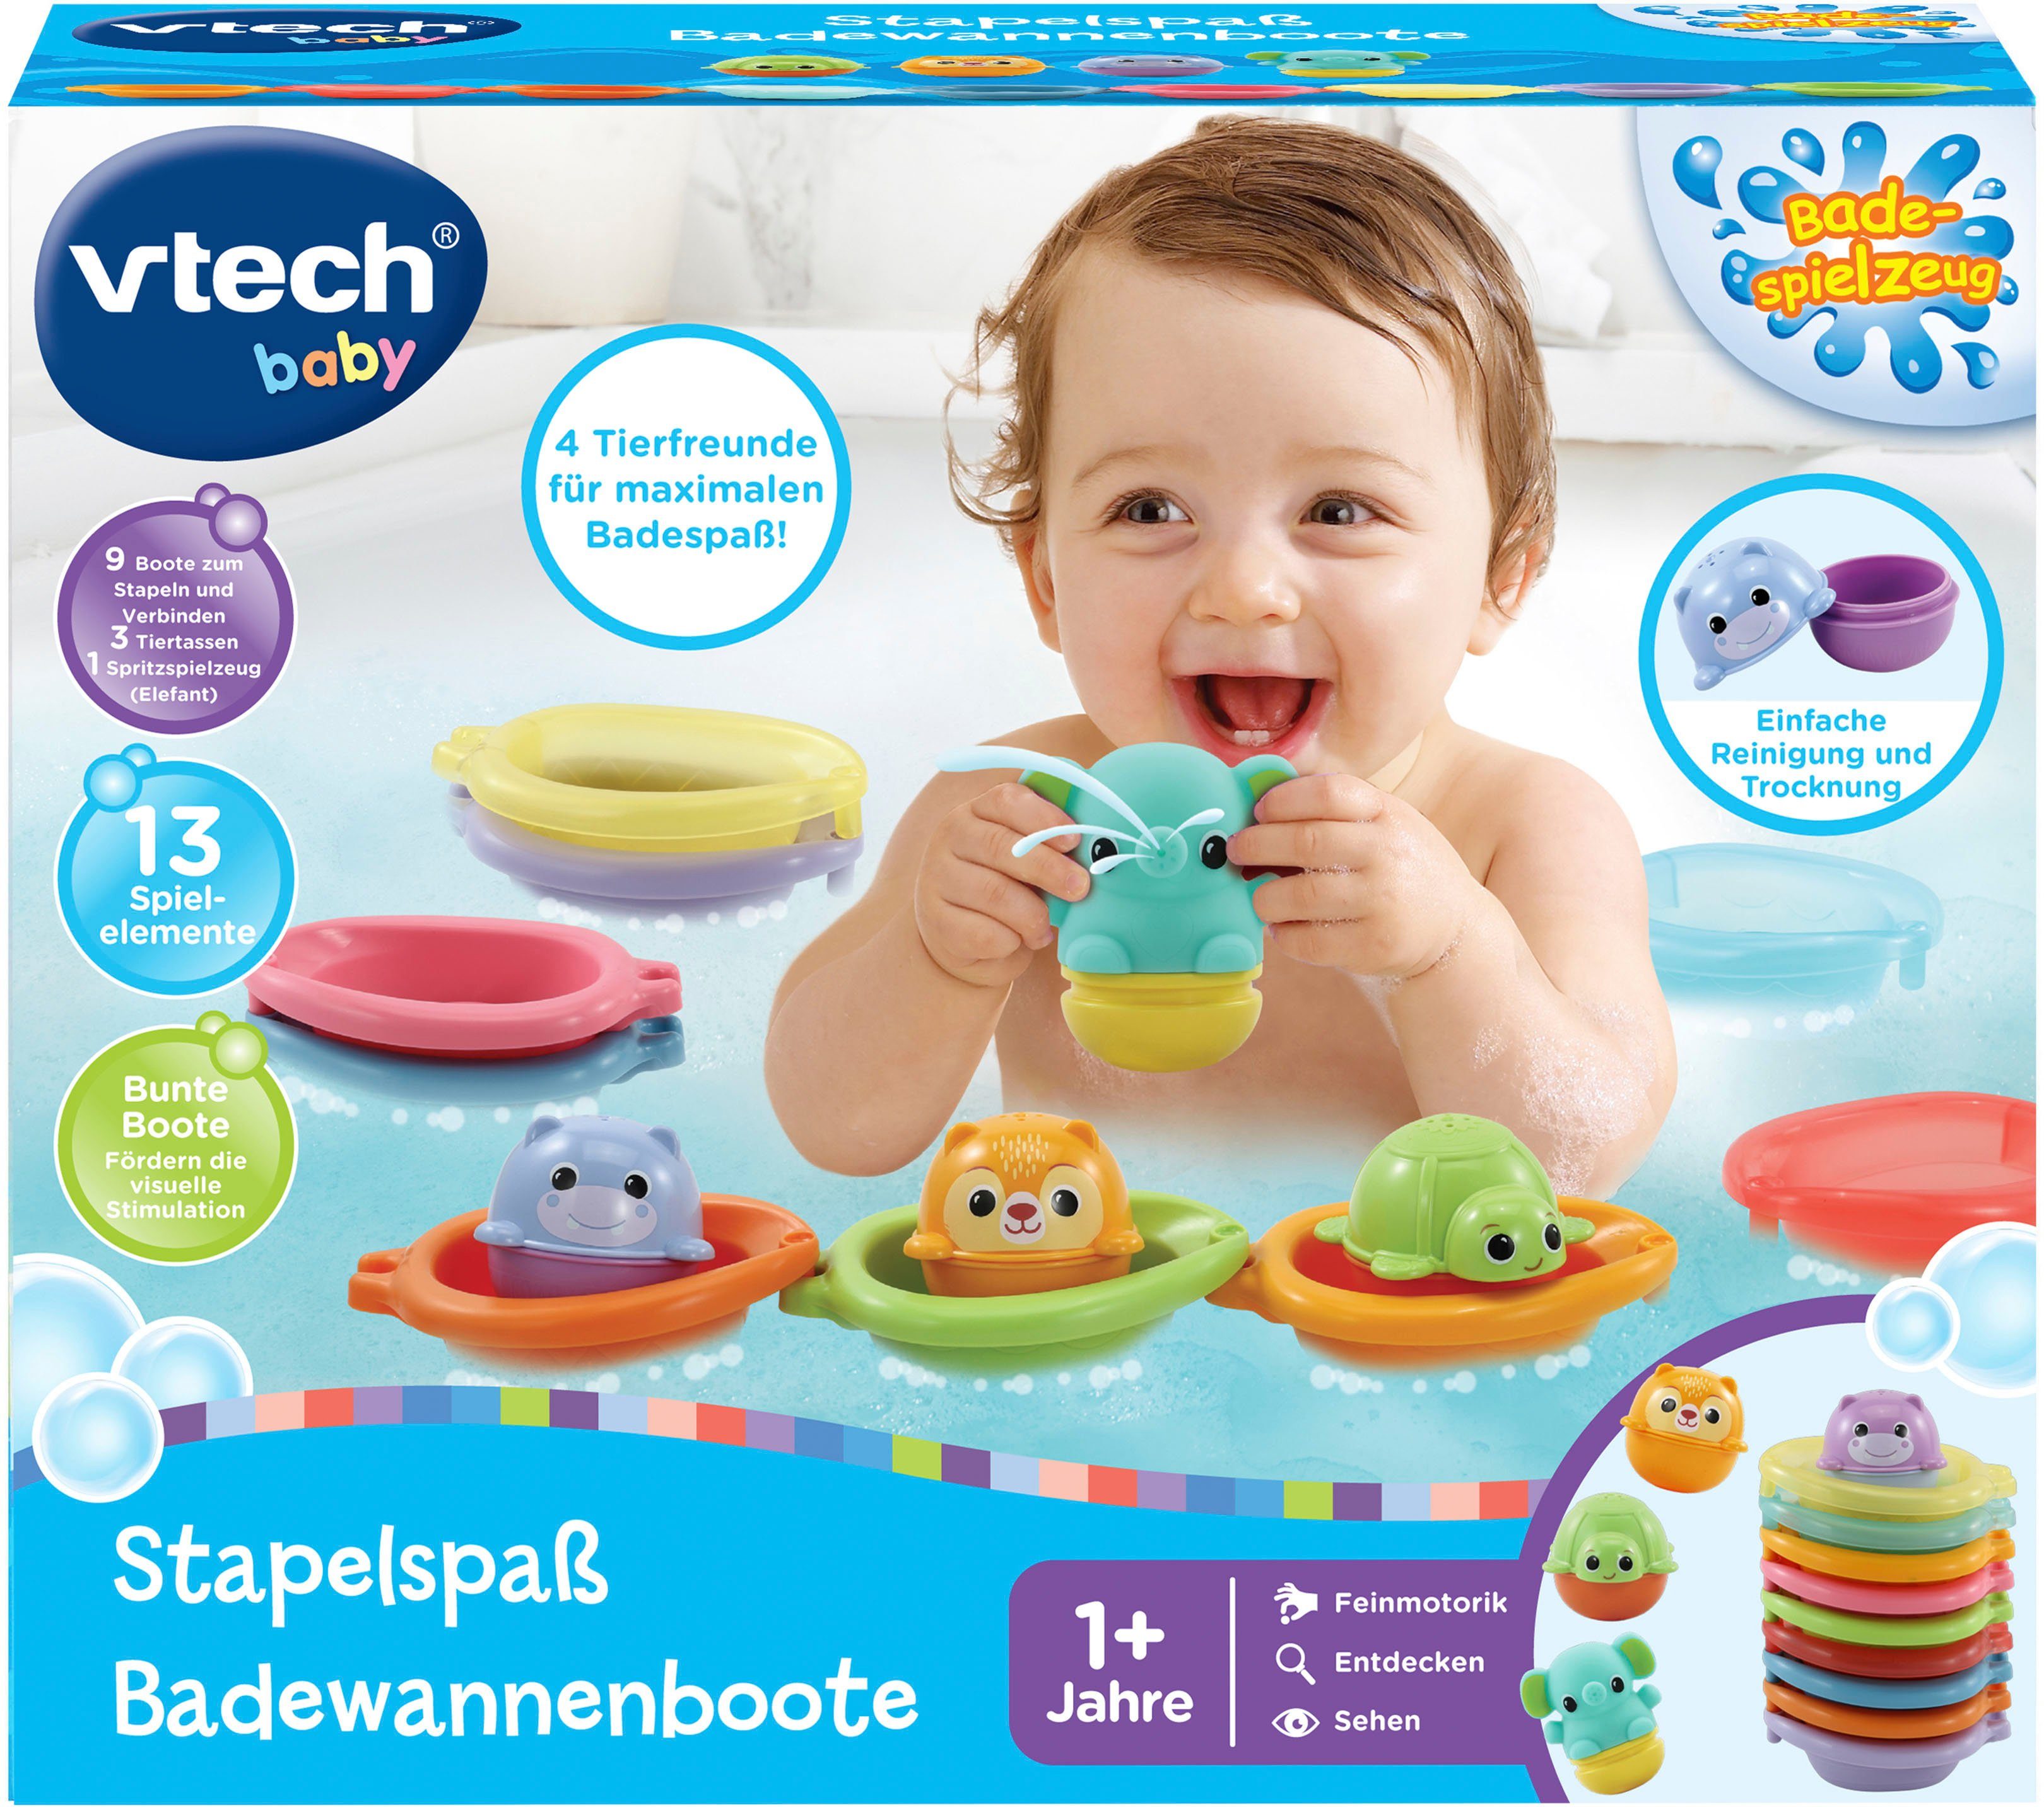 Badewannenboote Vtech Baby, Badespielzeug Stapelspaß Vtech®